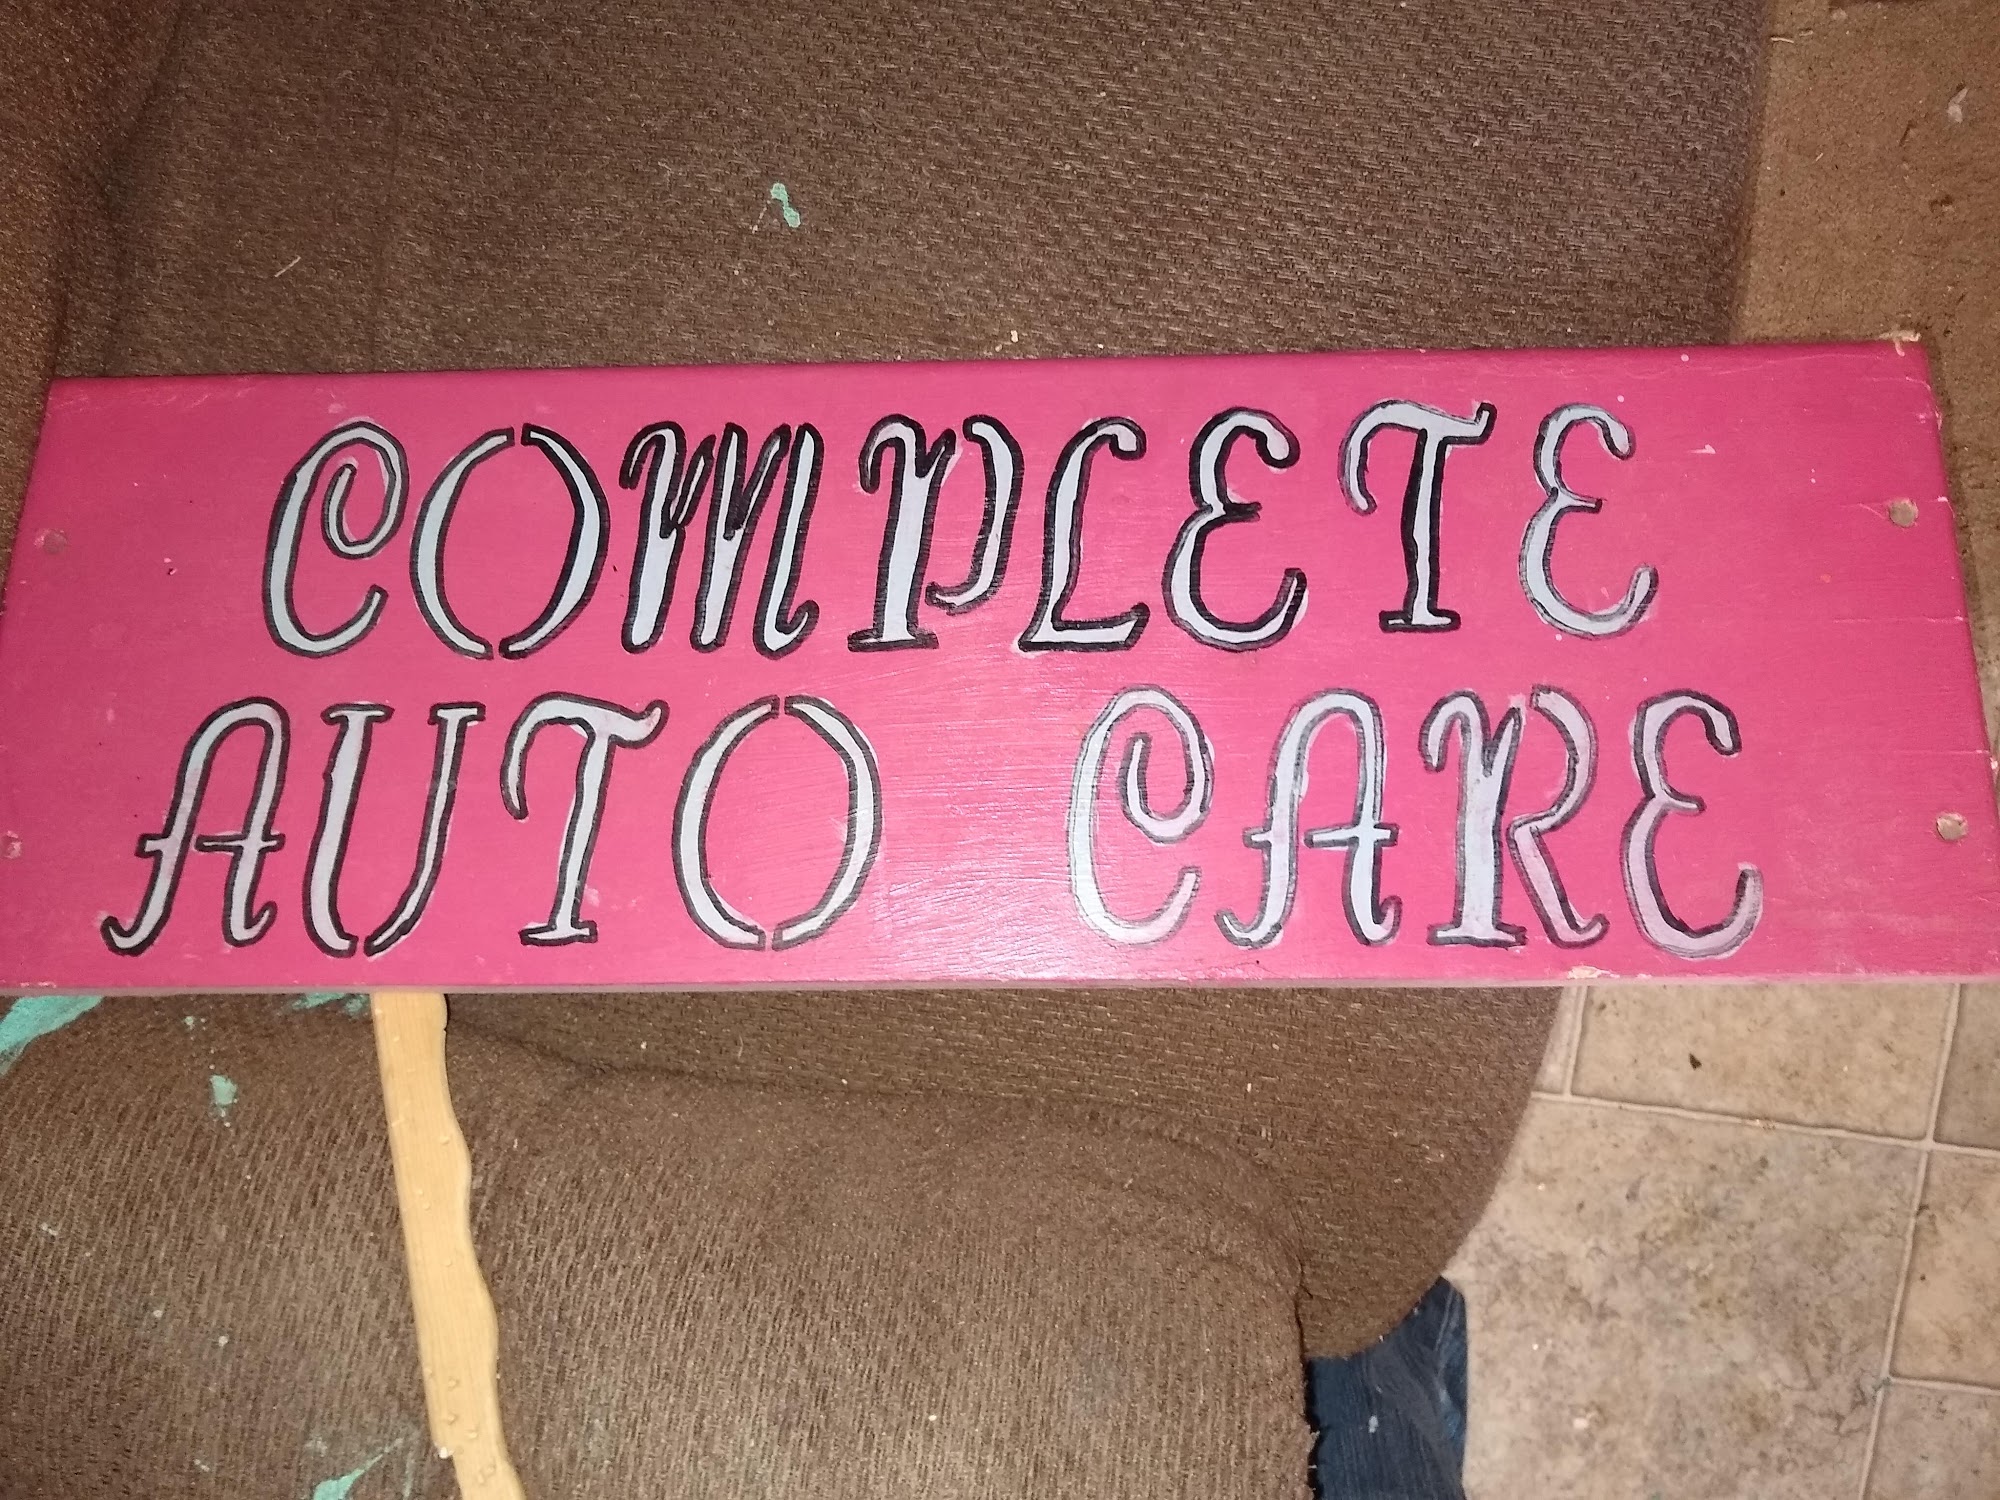 Complete Auto Care